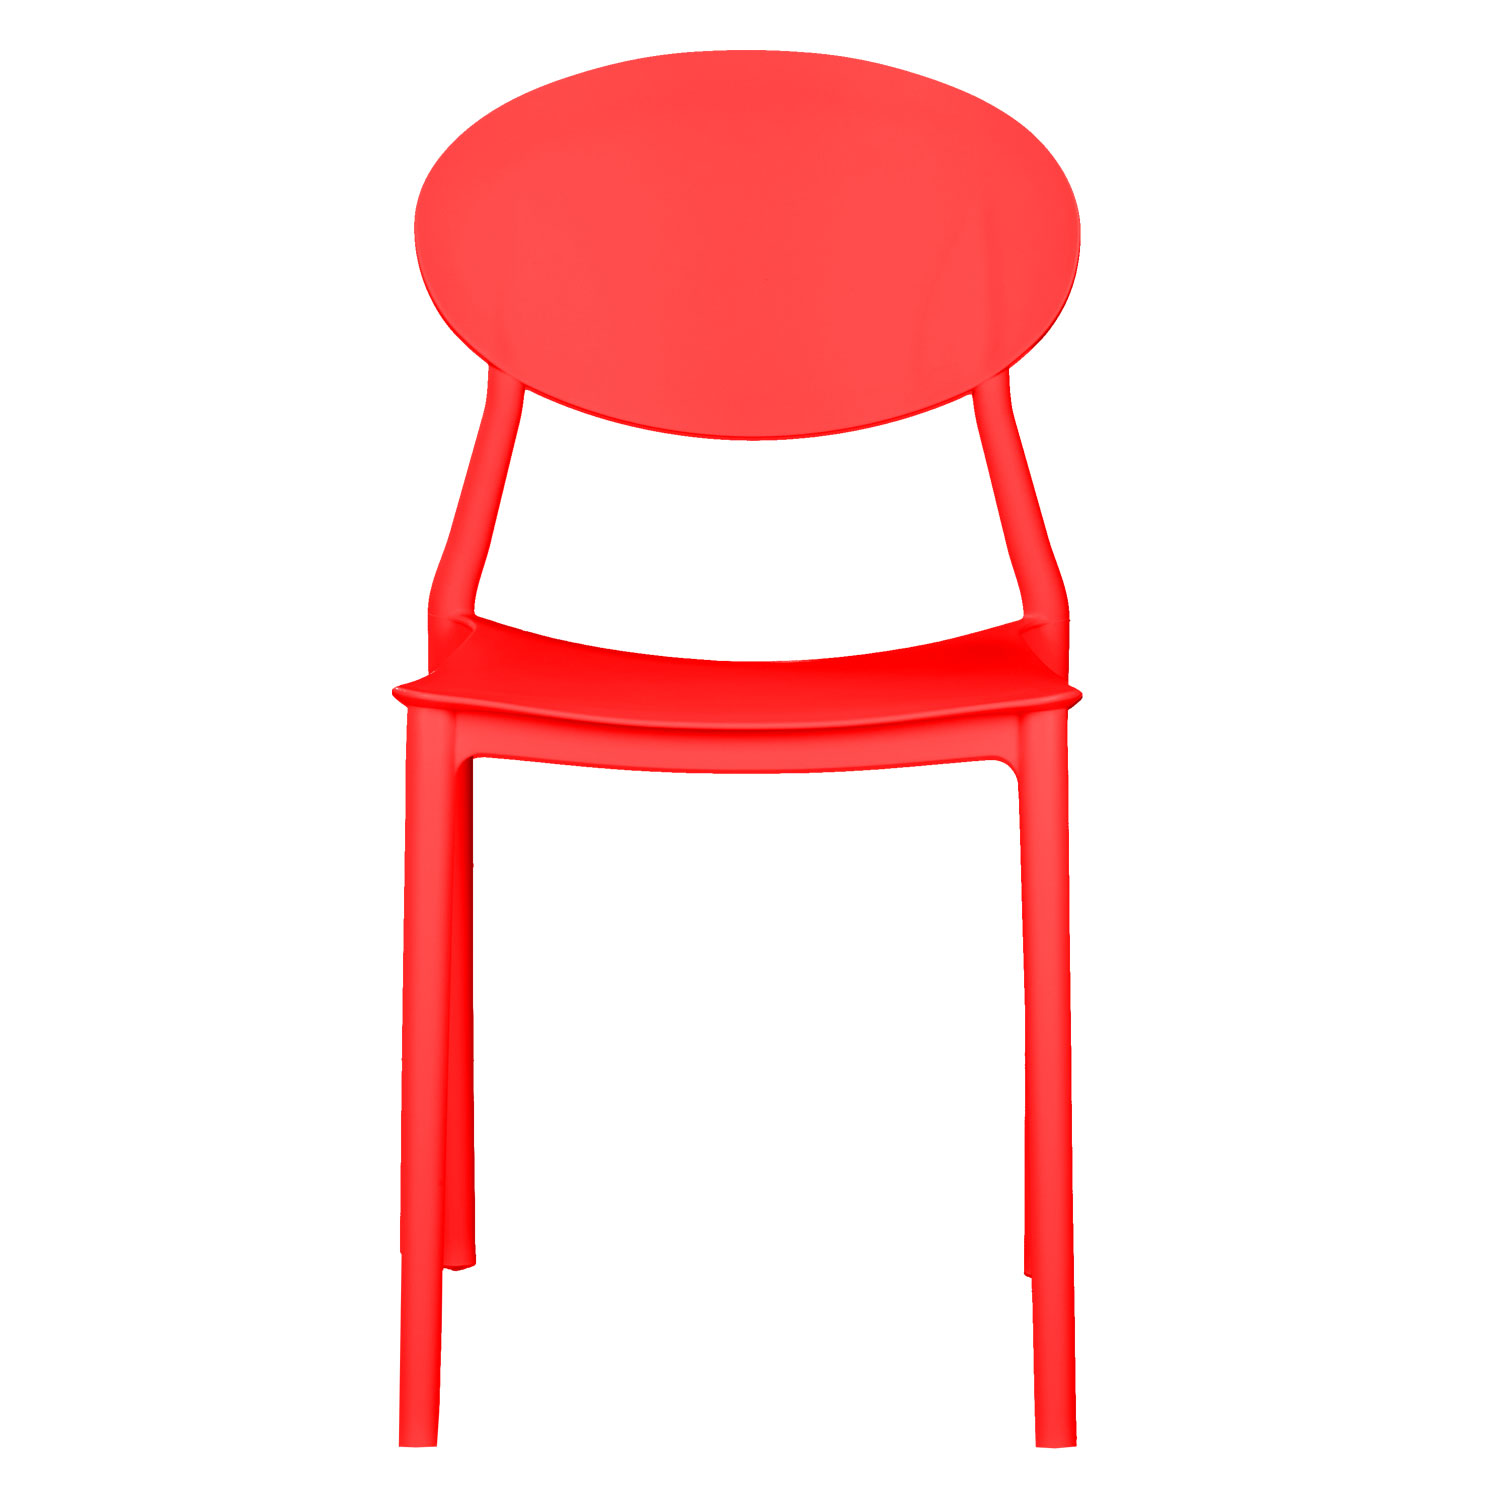 Chaise de jardin Lot de 4 Rouge Chaises design moderne Plastique Chaises exterieur Chaises empilable Chaise de cuisine